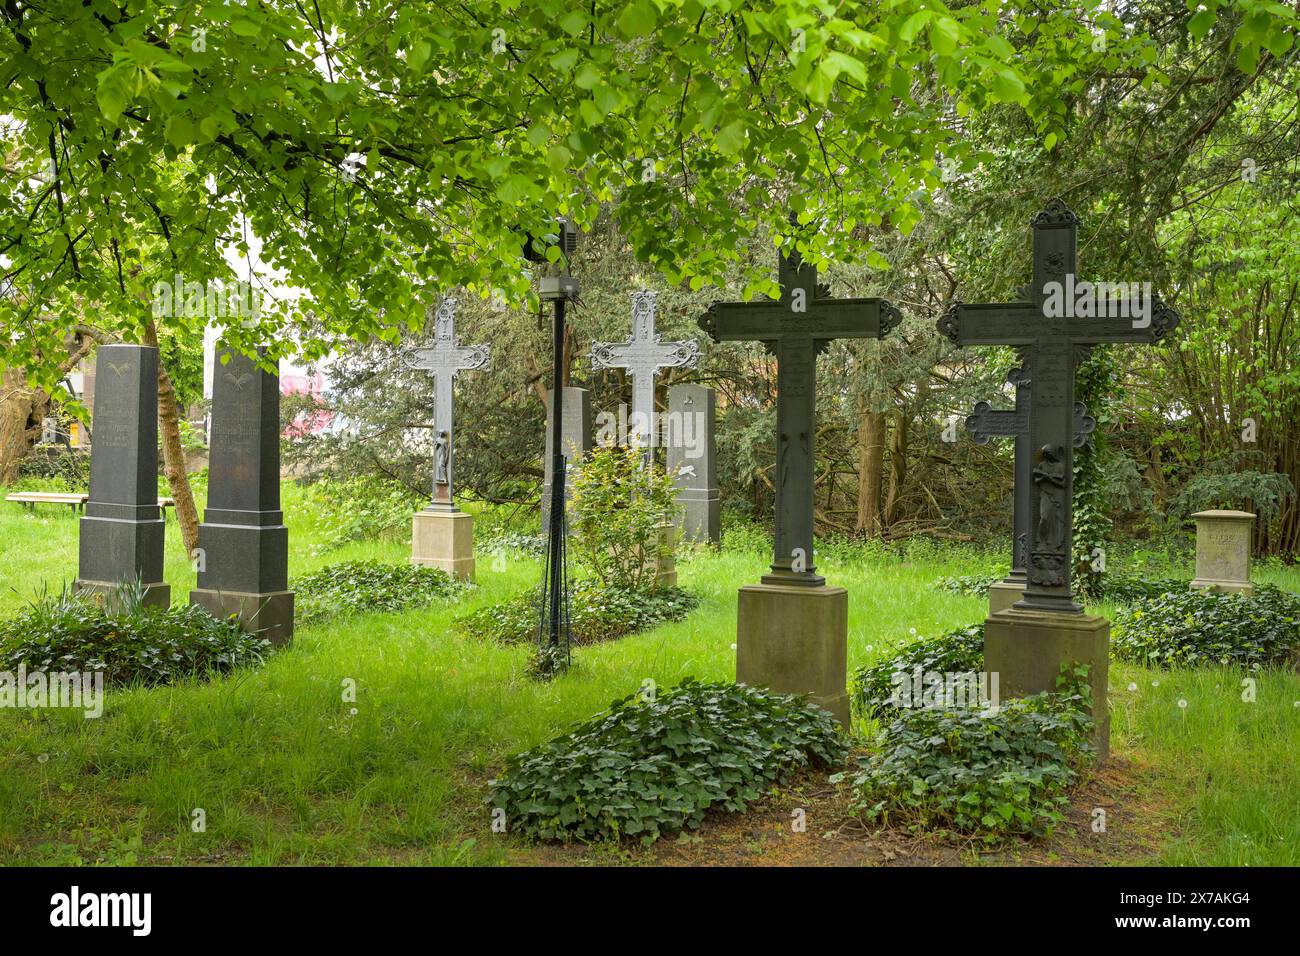 Alter Friedhof, Clayallee, Zehlendorf, Berlin, Deutschland *** Vecchio cimitero, Clayallee, Zehlendorf, Berlino, Germania Foto Stock